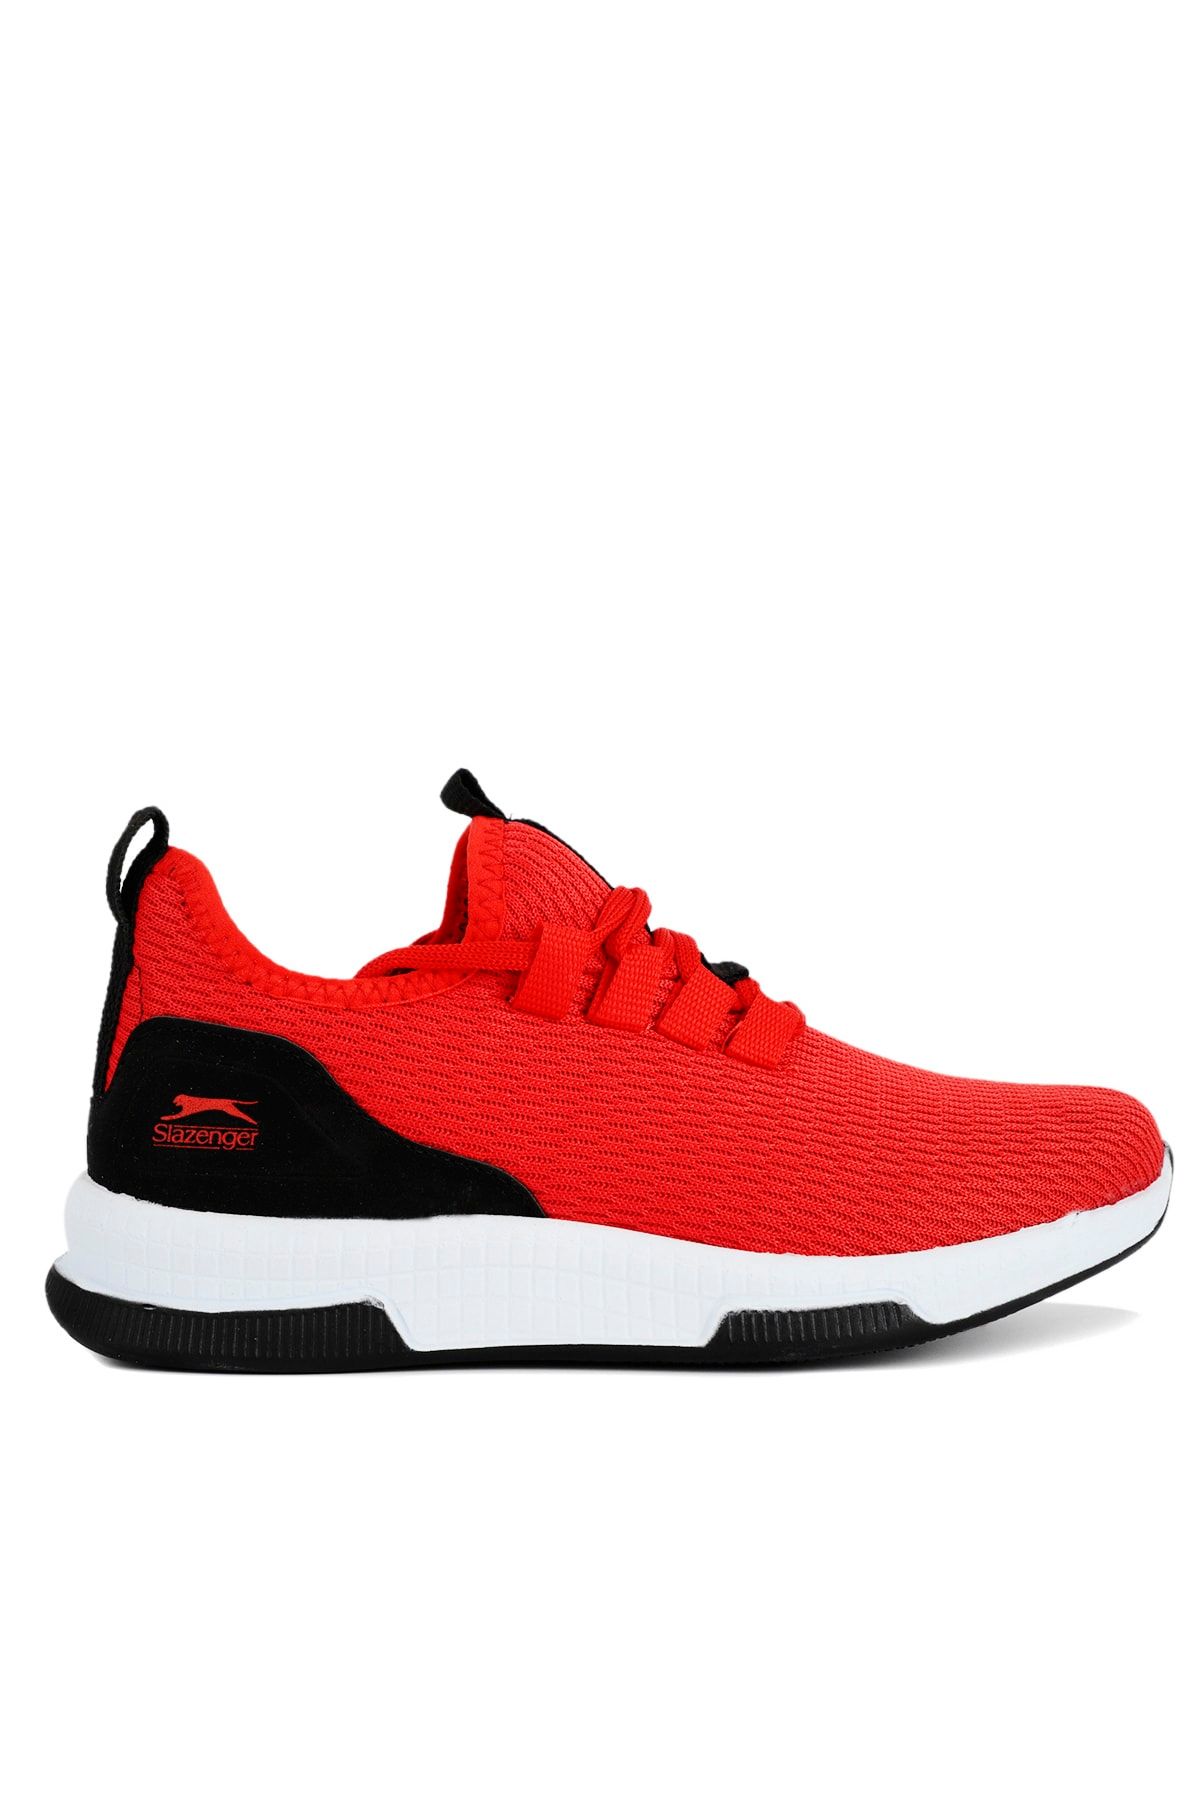 Slazenger Abena Sneaker Ayakkabı Kırmızı / Siyah